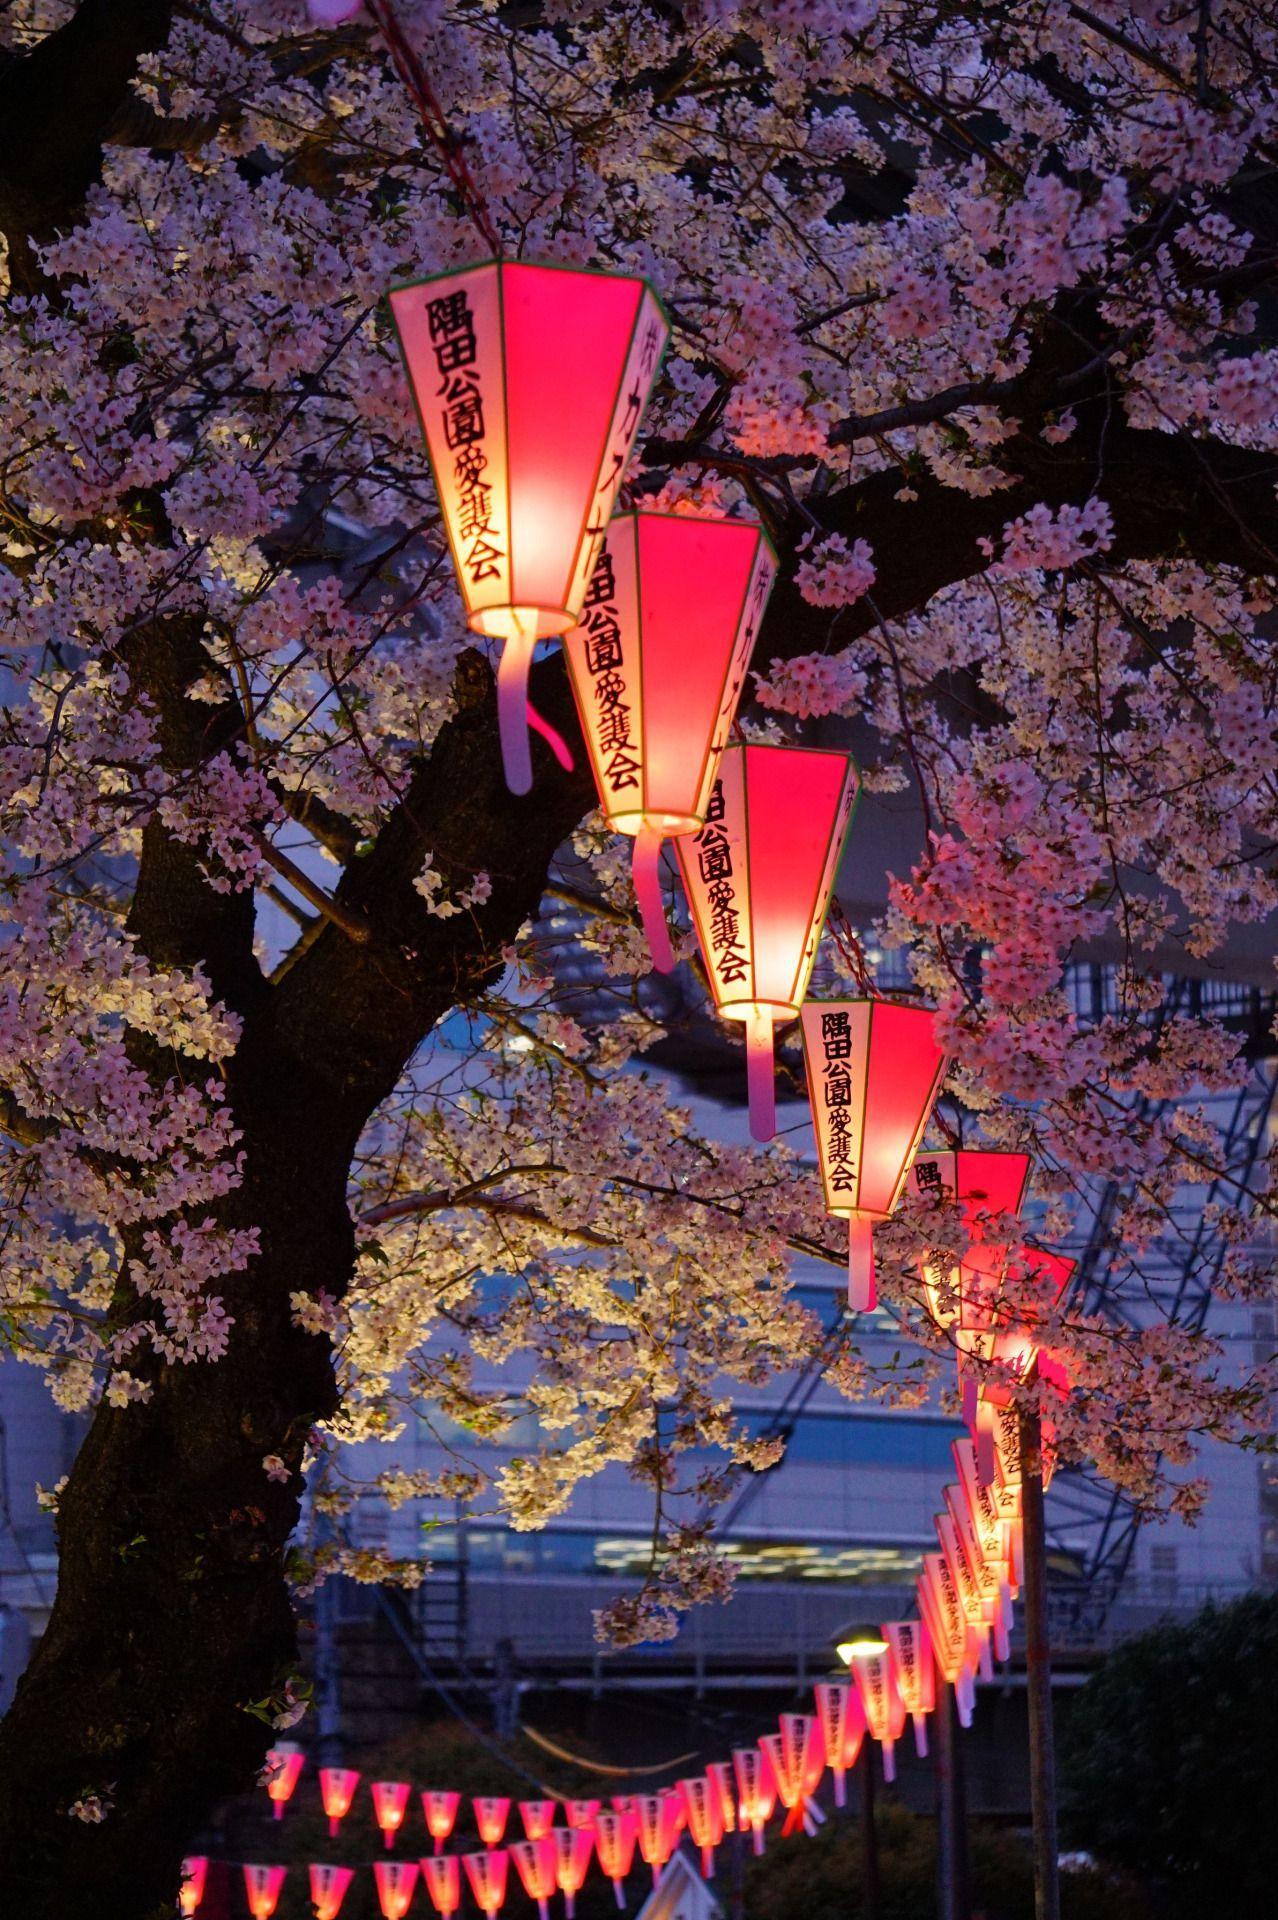 Japan Lantern Wallpapers - Top Free Japan Lantern Backgrounds ...